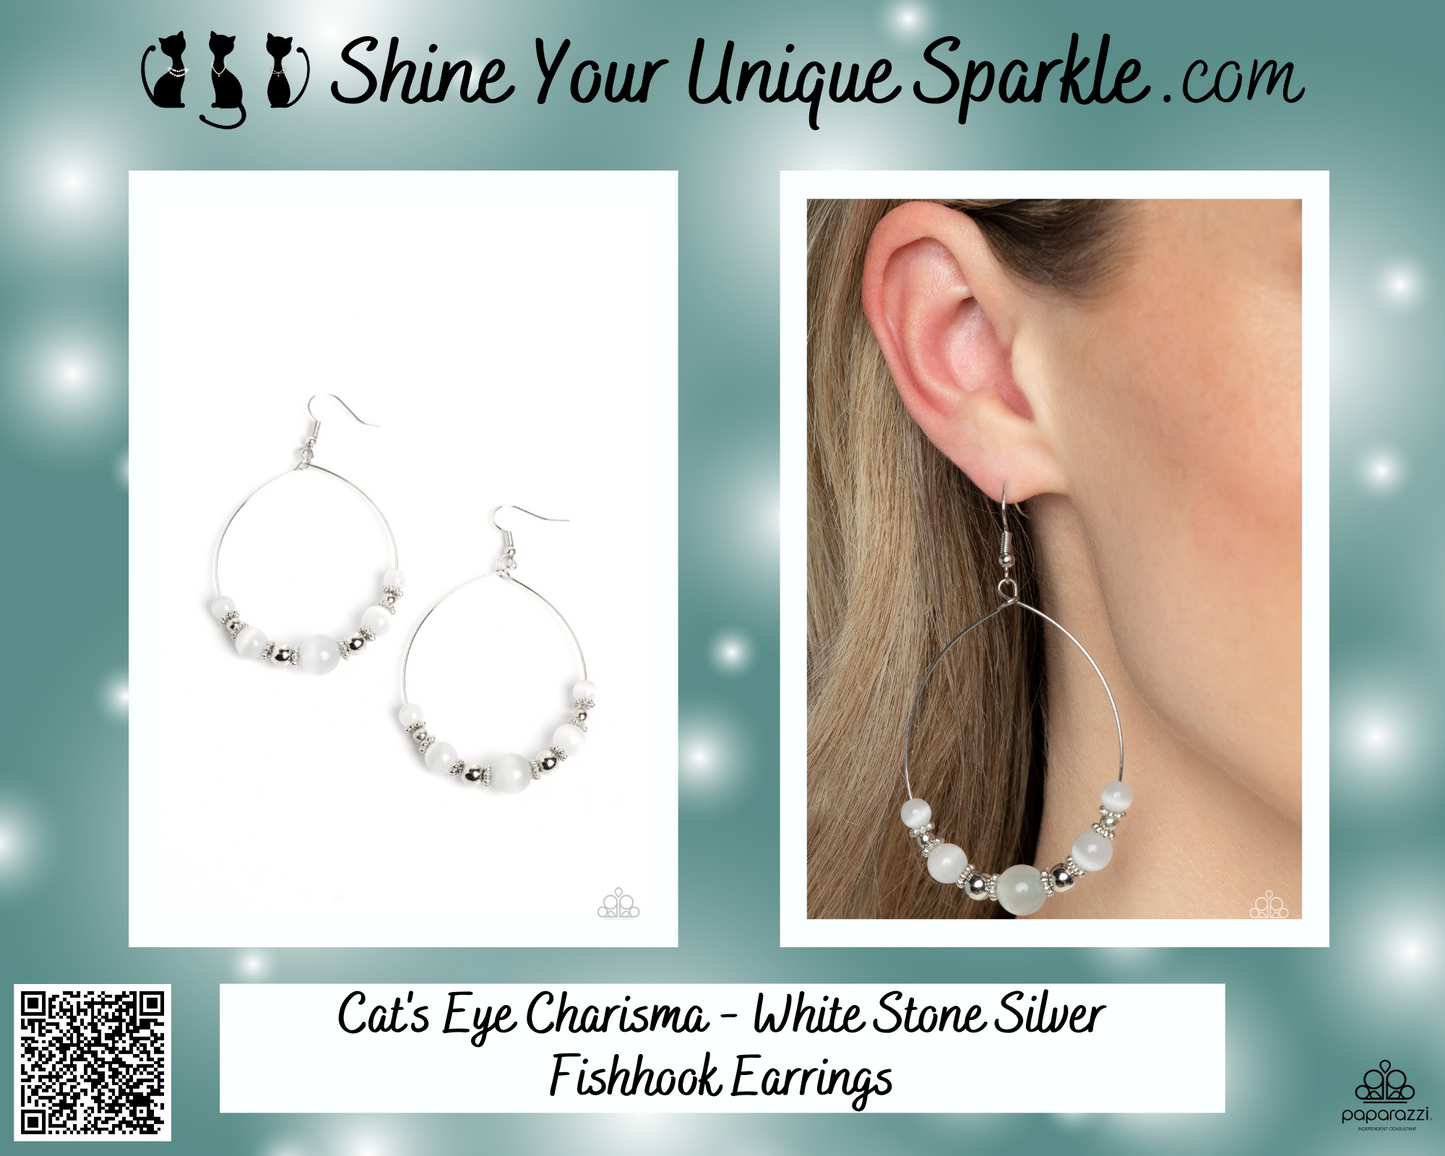 Cat's Eye Charisma - White Stone Silver Fishhook Earrings